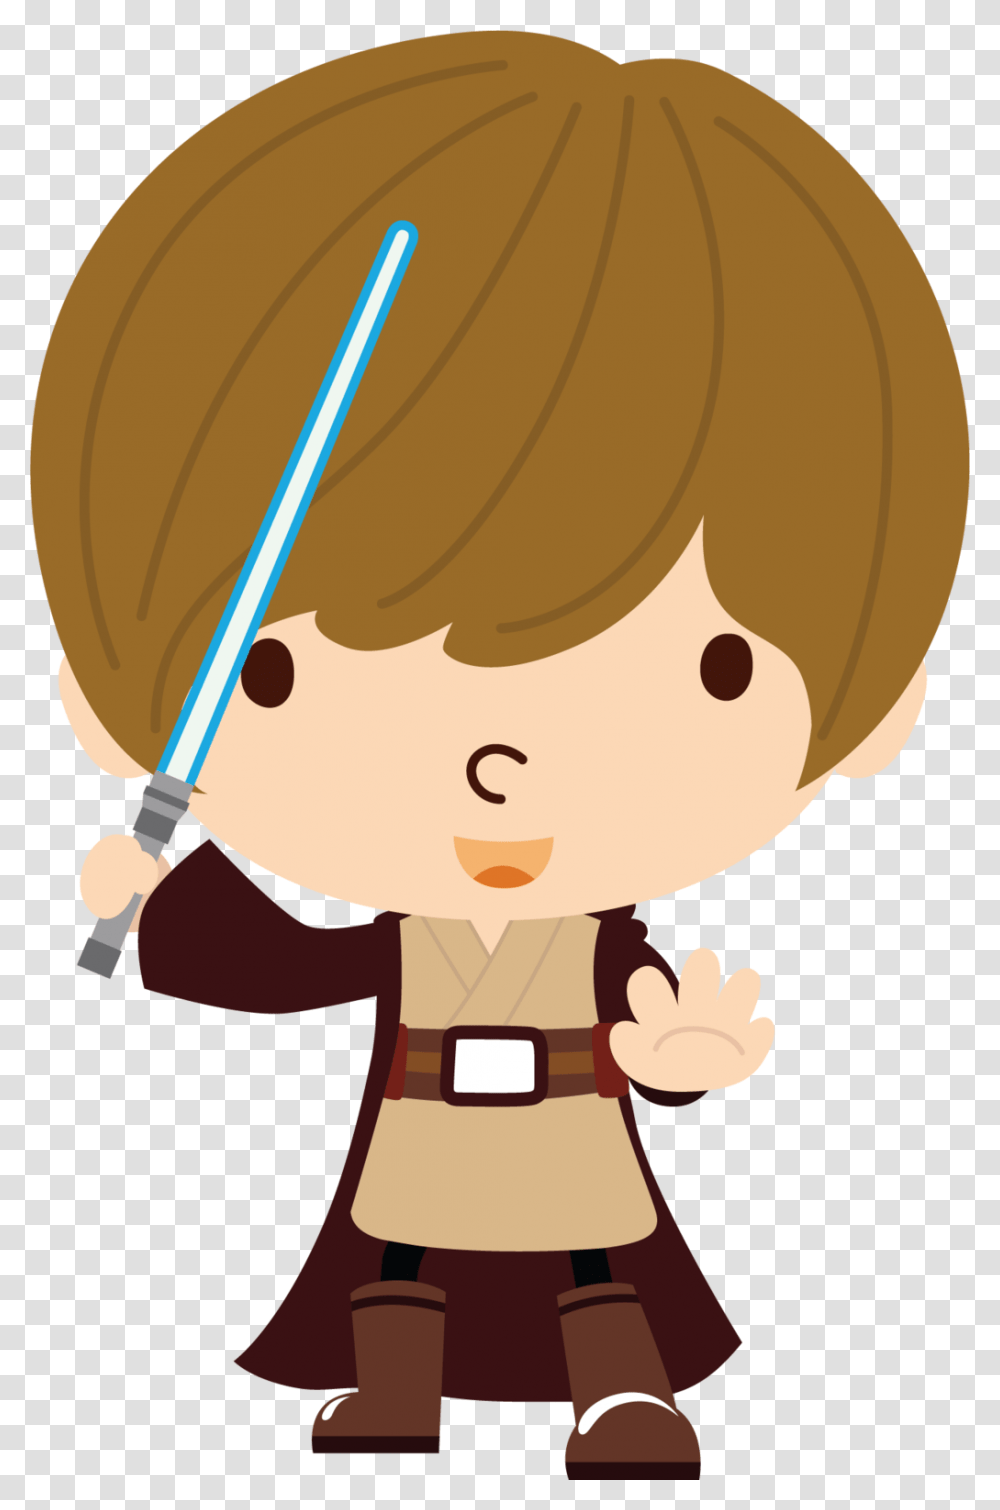 Star Wars Obi Wan Blue Lightsaber, Toy, Helmet, Apparel Transparent Png